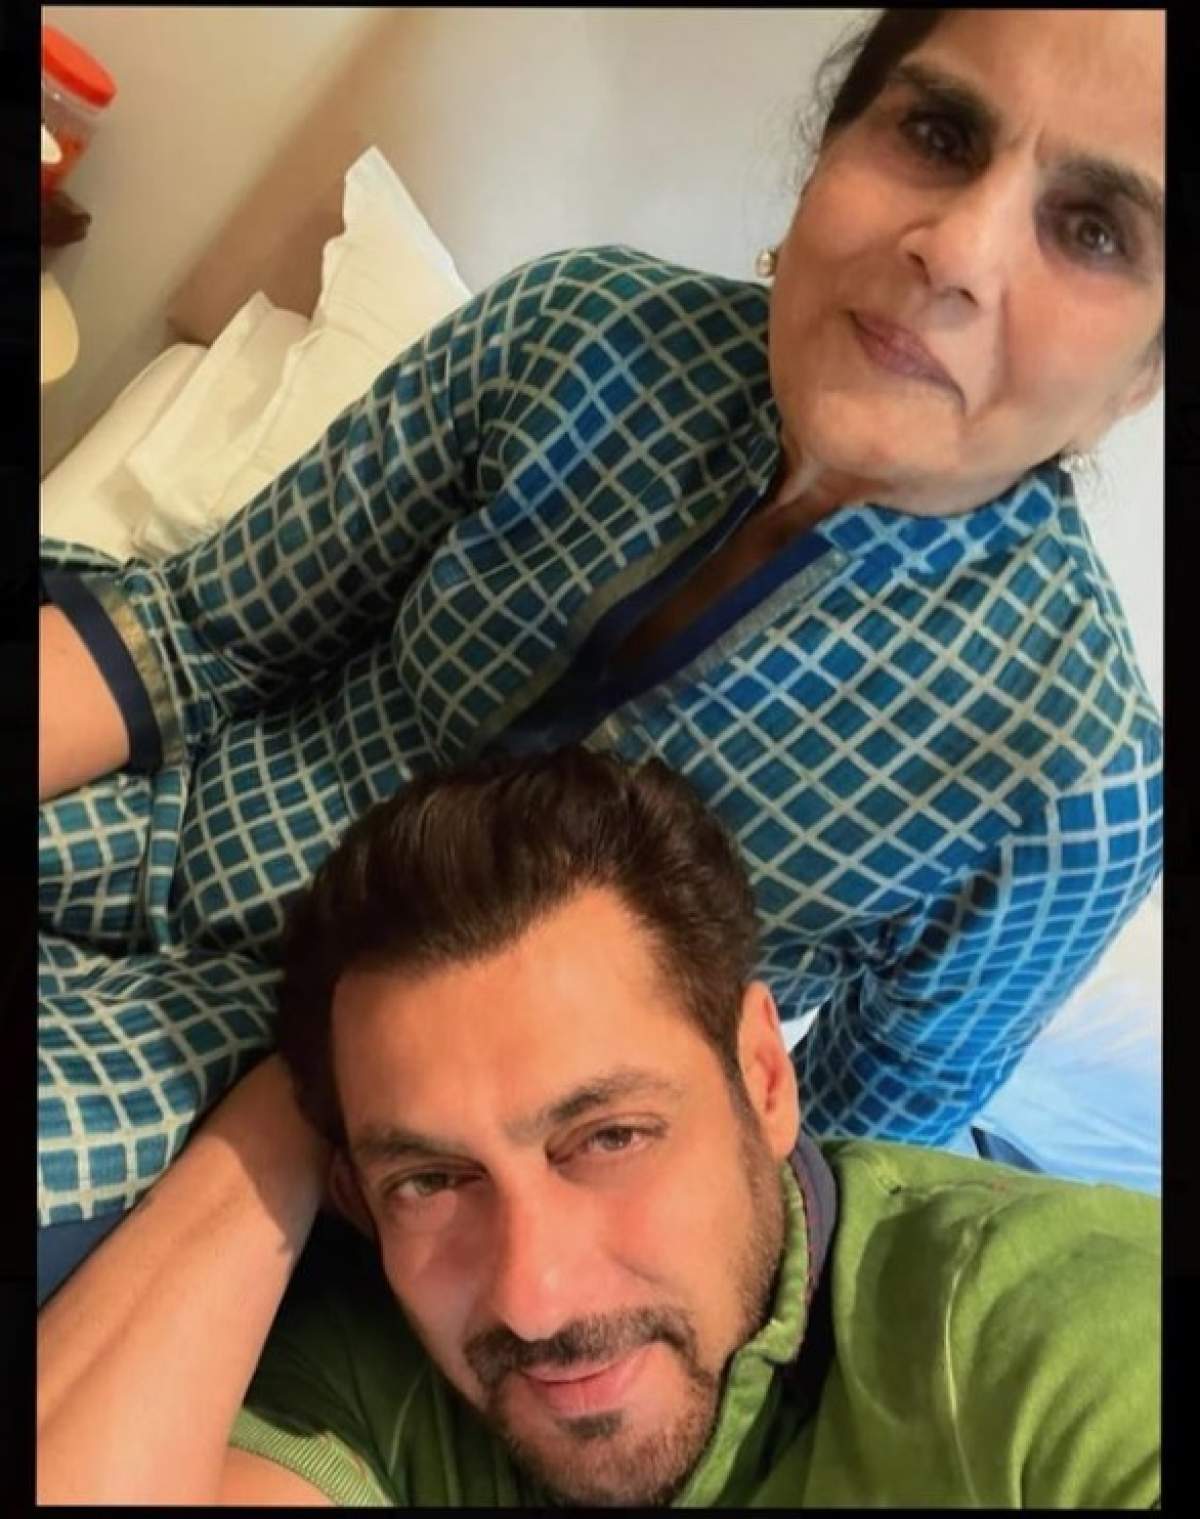 Cine este Sushila Charak, mama lui Salman Khan. Cum arată femeia în vârstă de 76 de ani